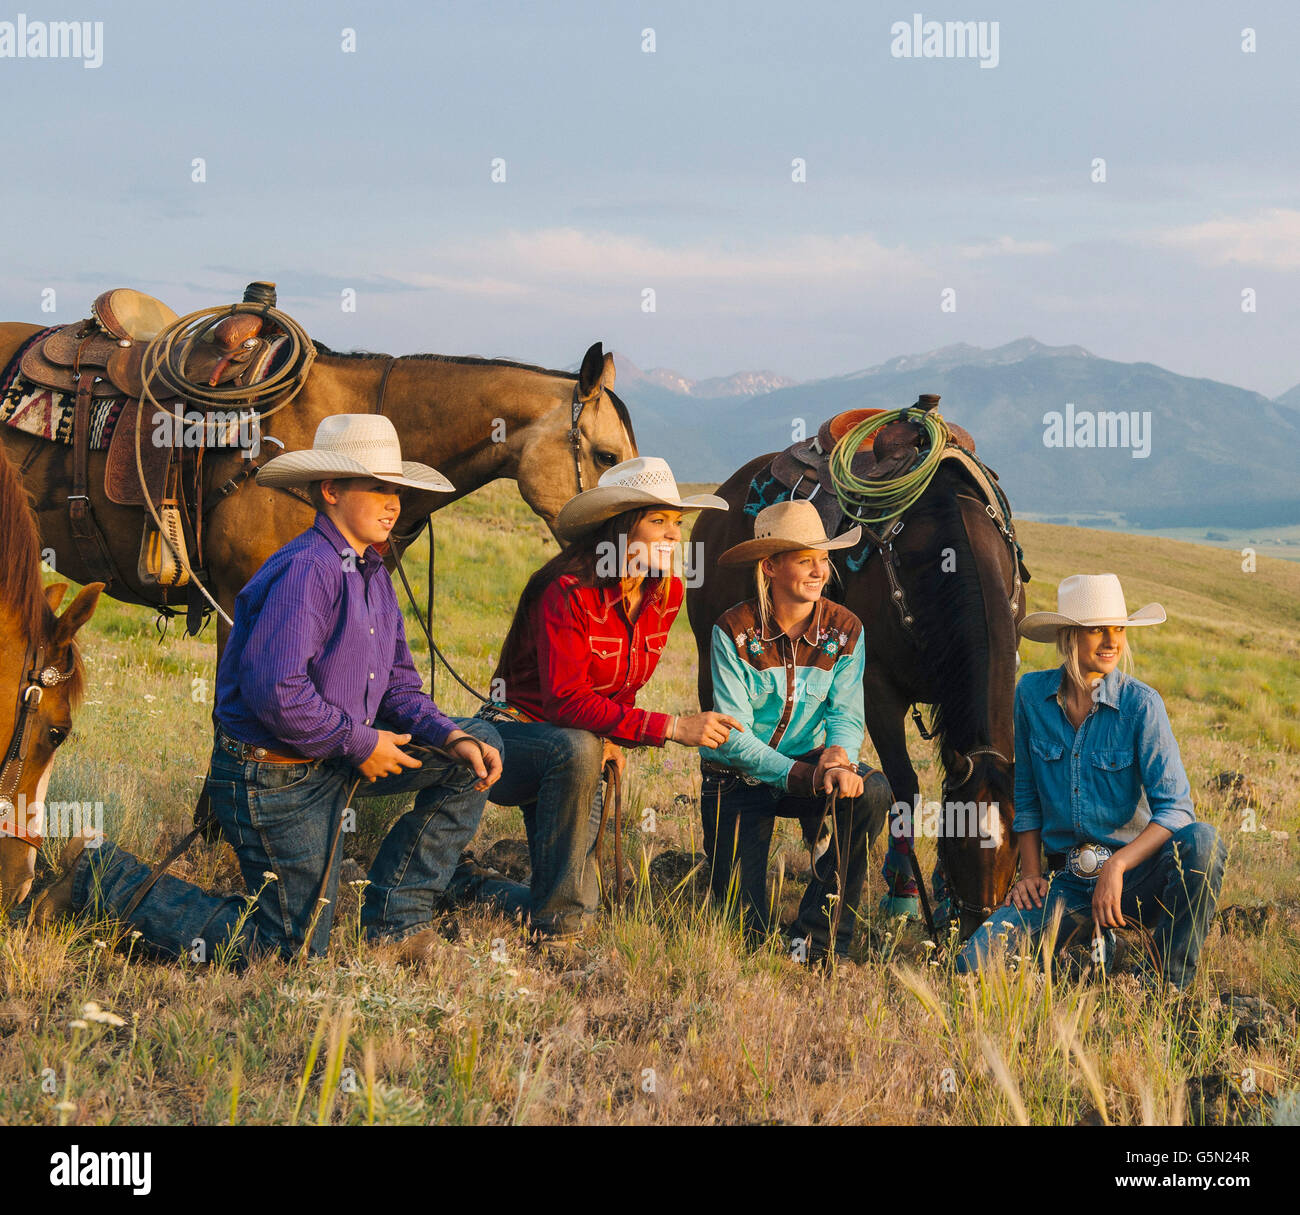 Vaqueros y vaqueras con caballos en el rancho Foto de stock